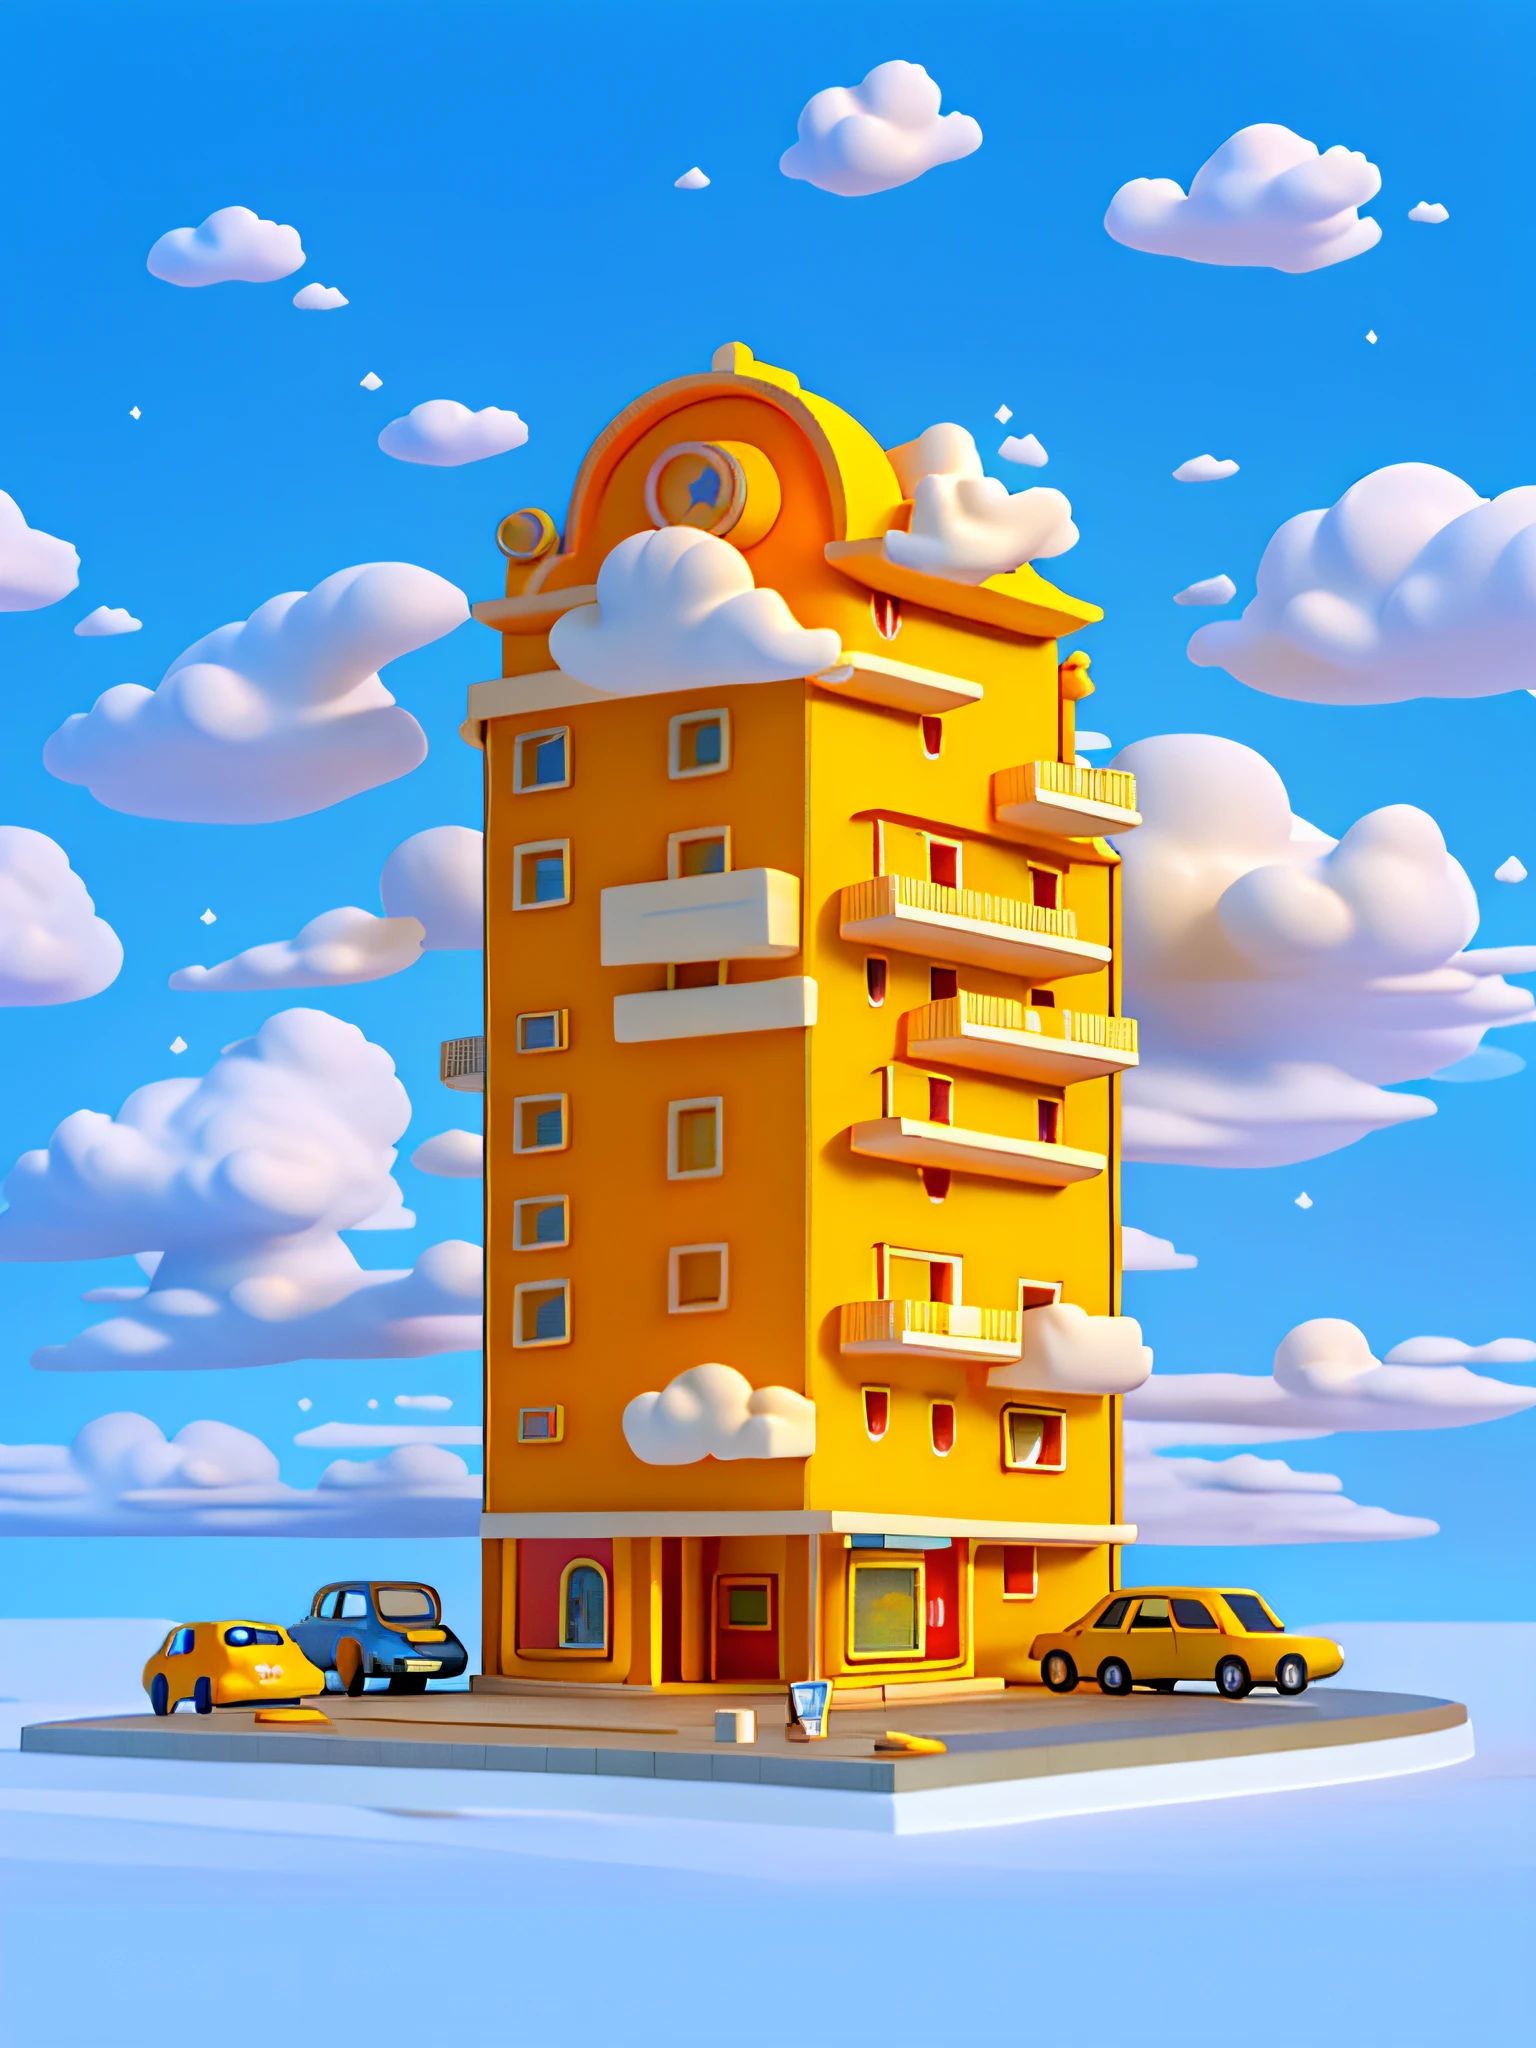 (шедевр), (Лучшее качество), (Ультра подробный) Простое мультяшное здание отеля, Отель Малоэтажное Здание, игрушечная модель, облака, легковые автомобили, Вид сверху, чистый фон, Бледно-желтые и бледно-оранжевые здания,